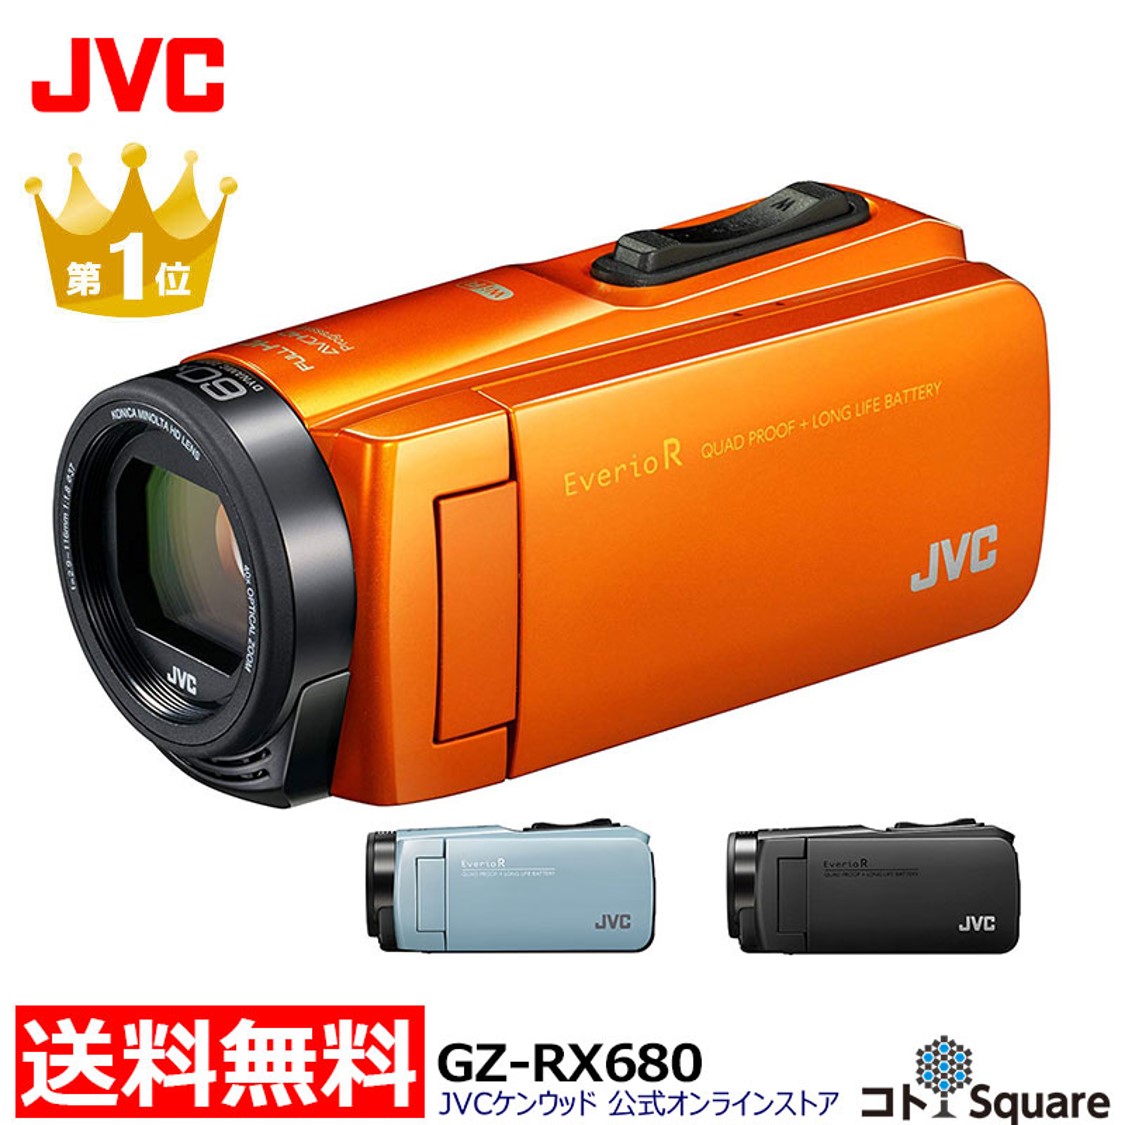 楽天スーパーSALE」にJVCのビデオカメラ「Everio R」がお買い得価格で 